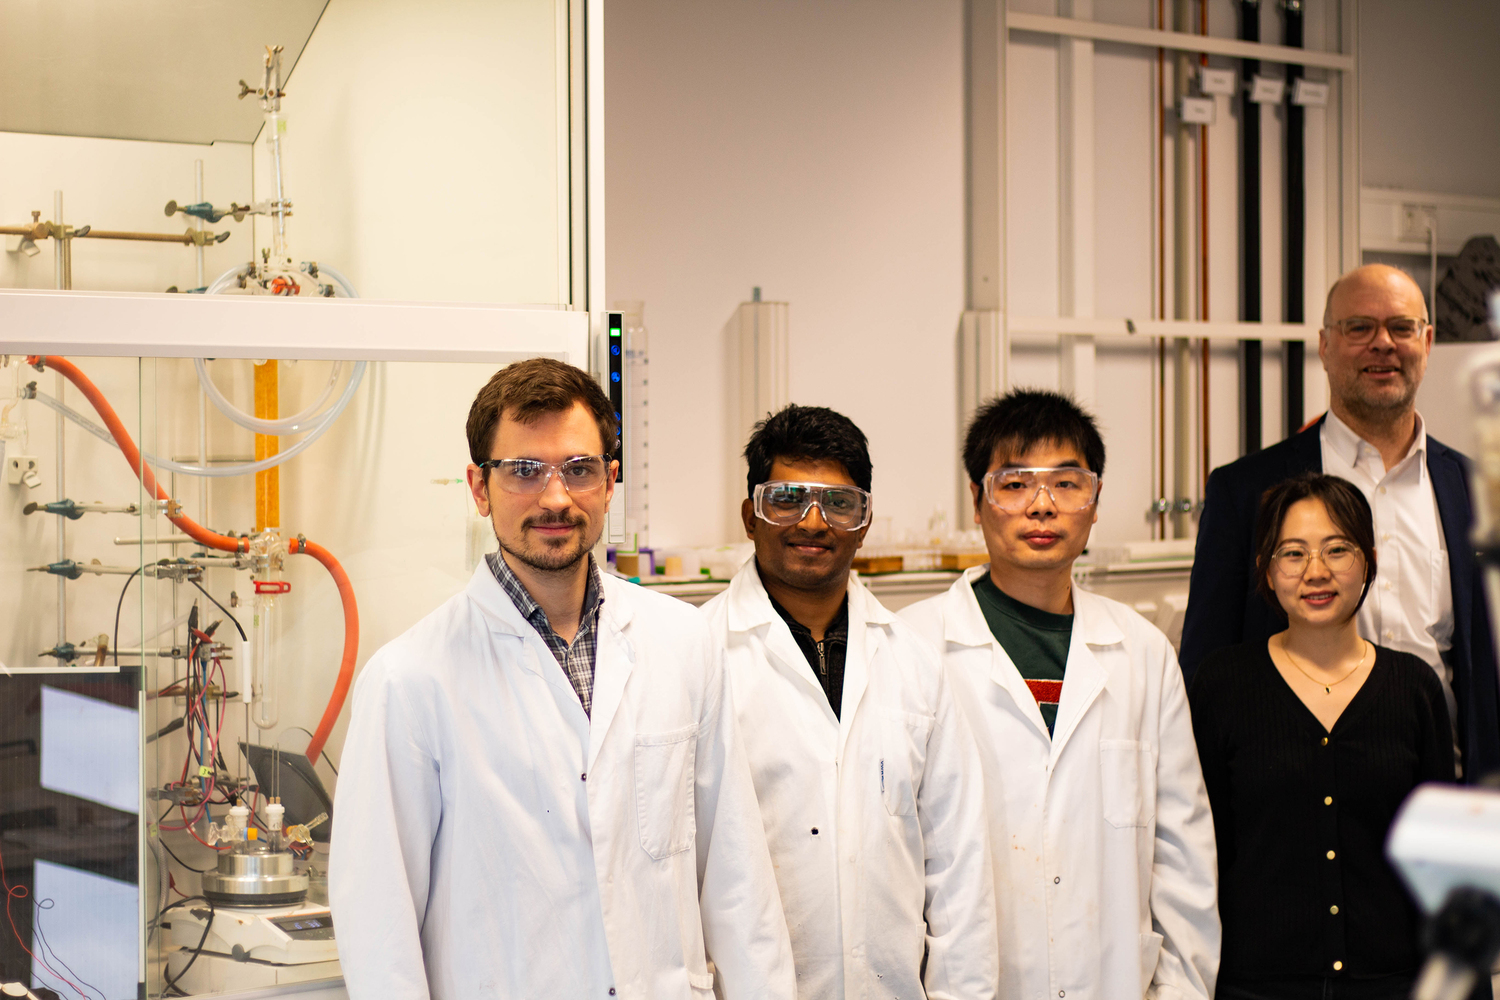 Publikationsteam (von links): Tristan von Münchow, Suman Dana, Yang Xu, Binbin Yuan, Prof. Dr. Lutz Ackermann